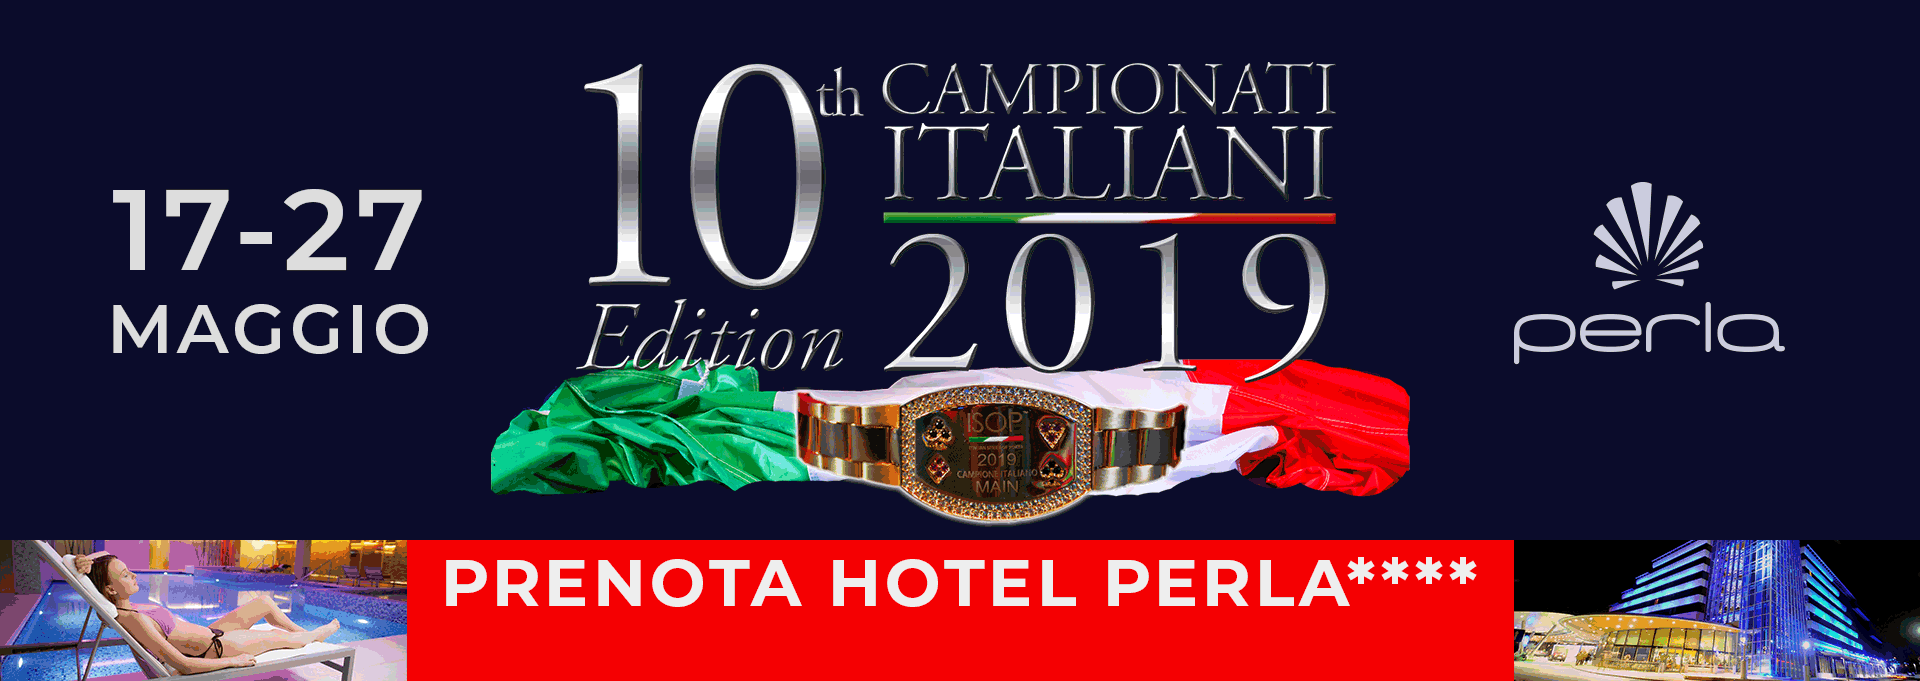 Banner-Campionati italiani 2019 poker perla resort casino maggio